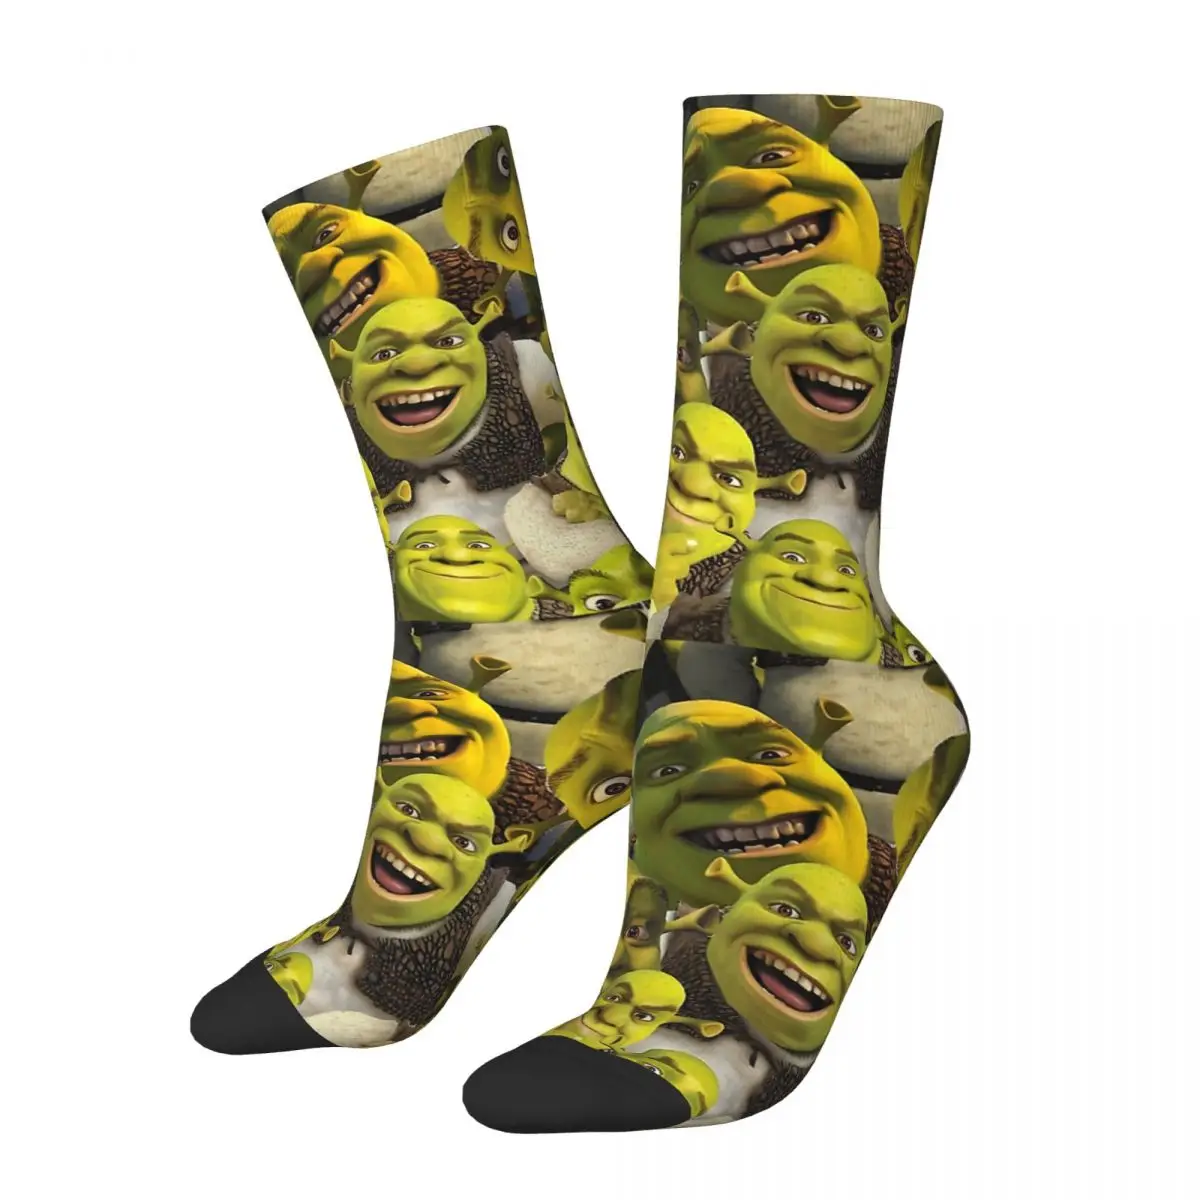 

Funny Happy Men's compression Socks Shrek Vintage Harajuku Meme Hip Hop Novelty Pattern Crew Crazy Sock Gift Printed